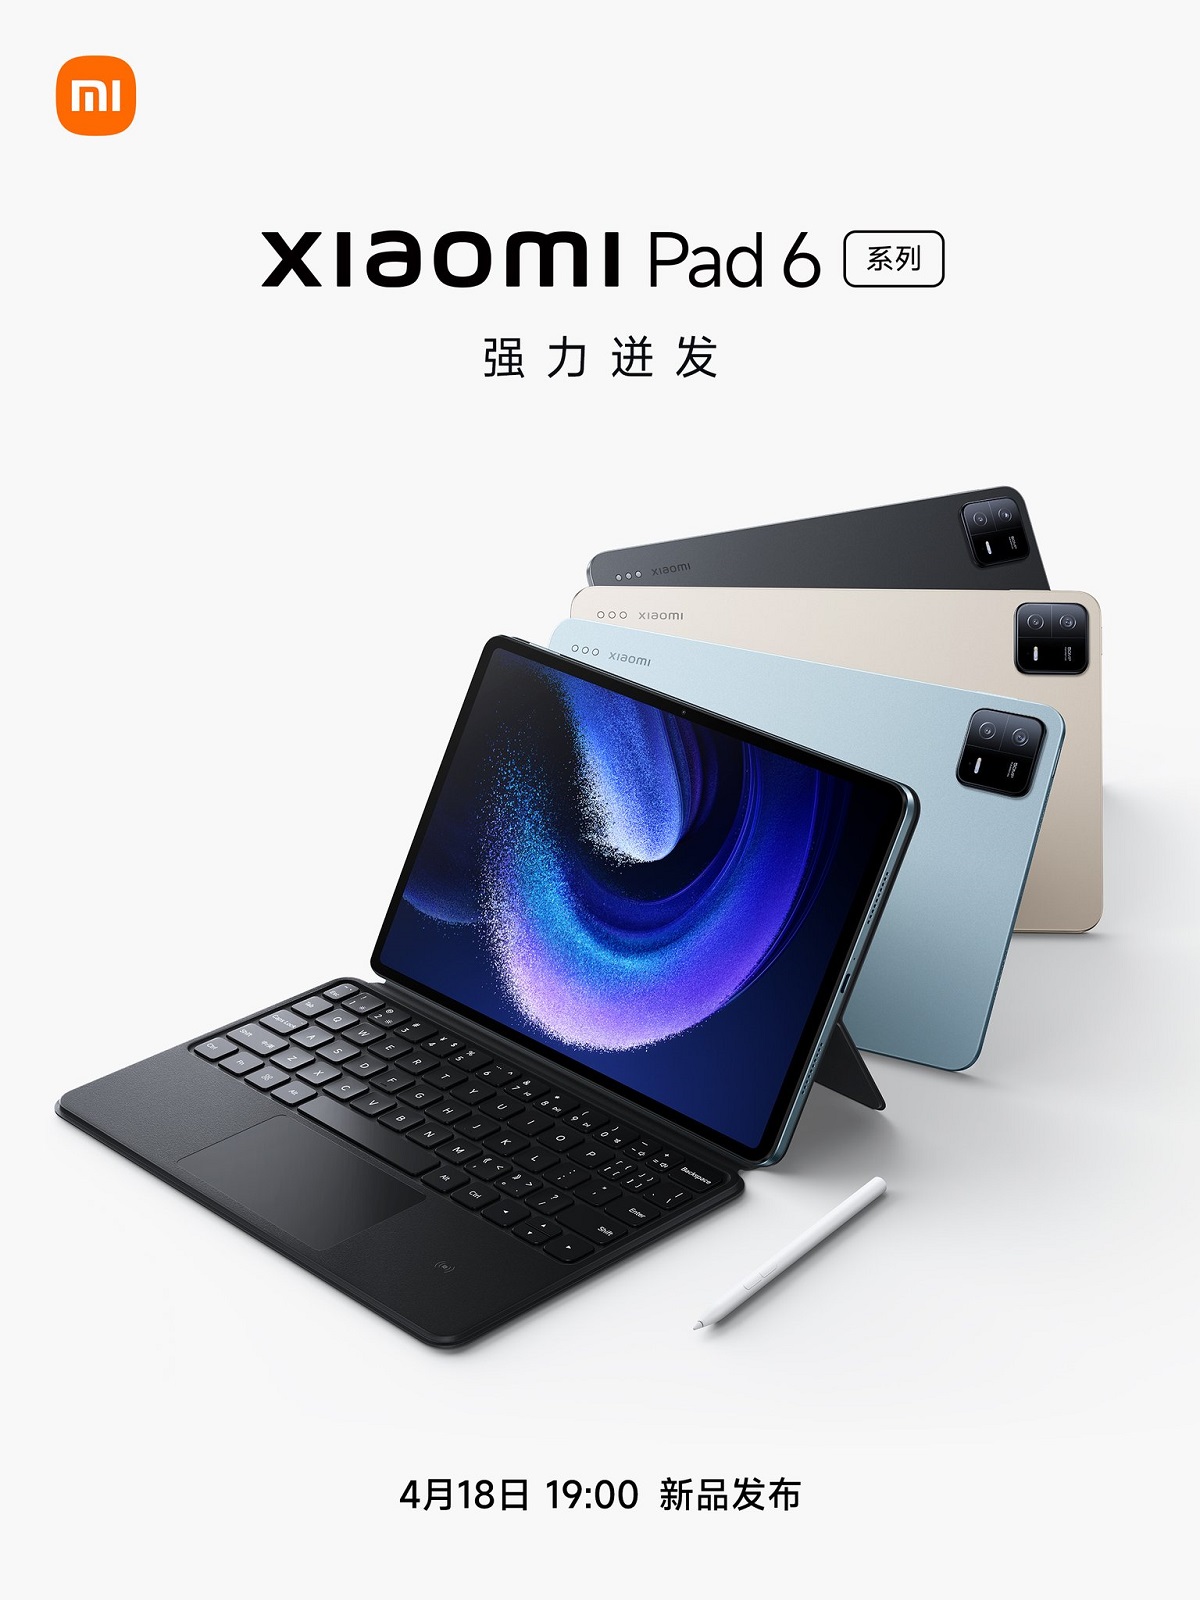 Xiaomi представит новую серию планшетов Xiaomi Pad 6 18 апреля